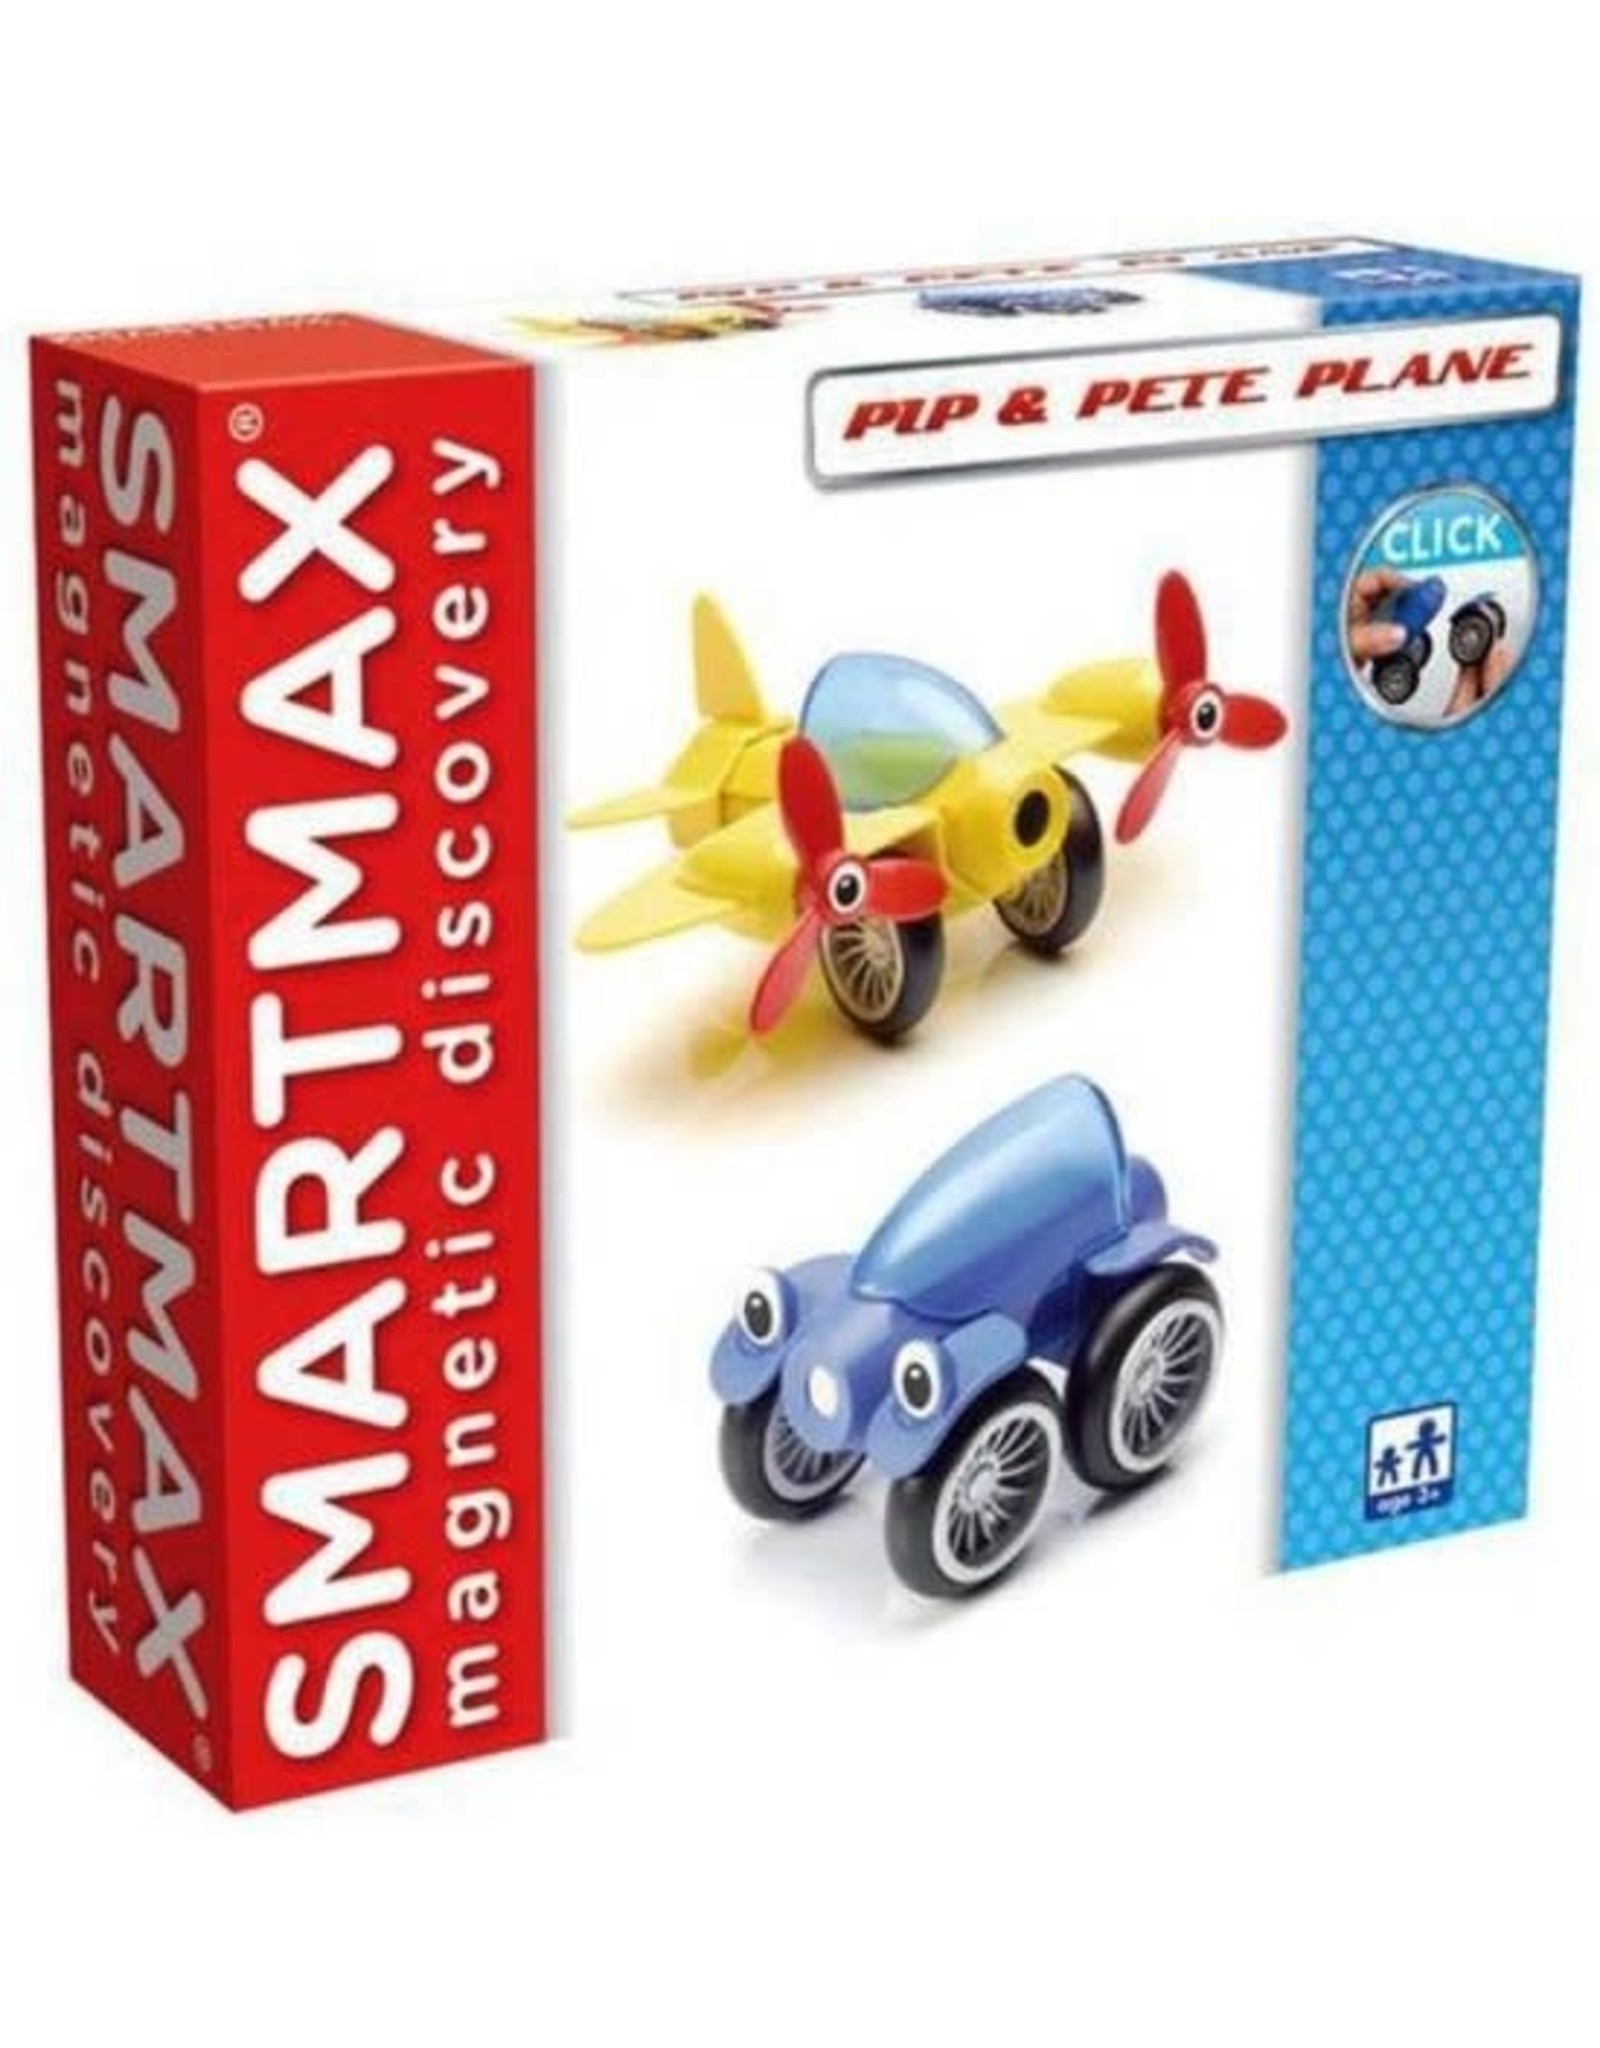 Smartmax SmartMax SMX 206 Pip & Pete Plane